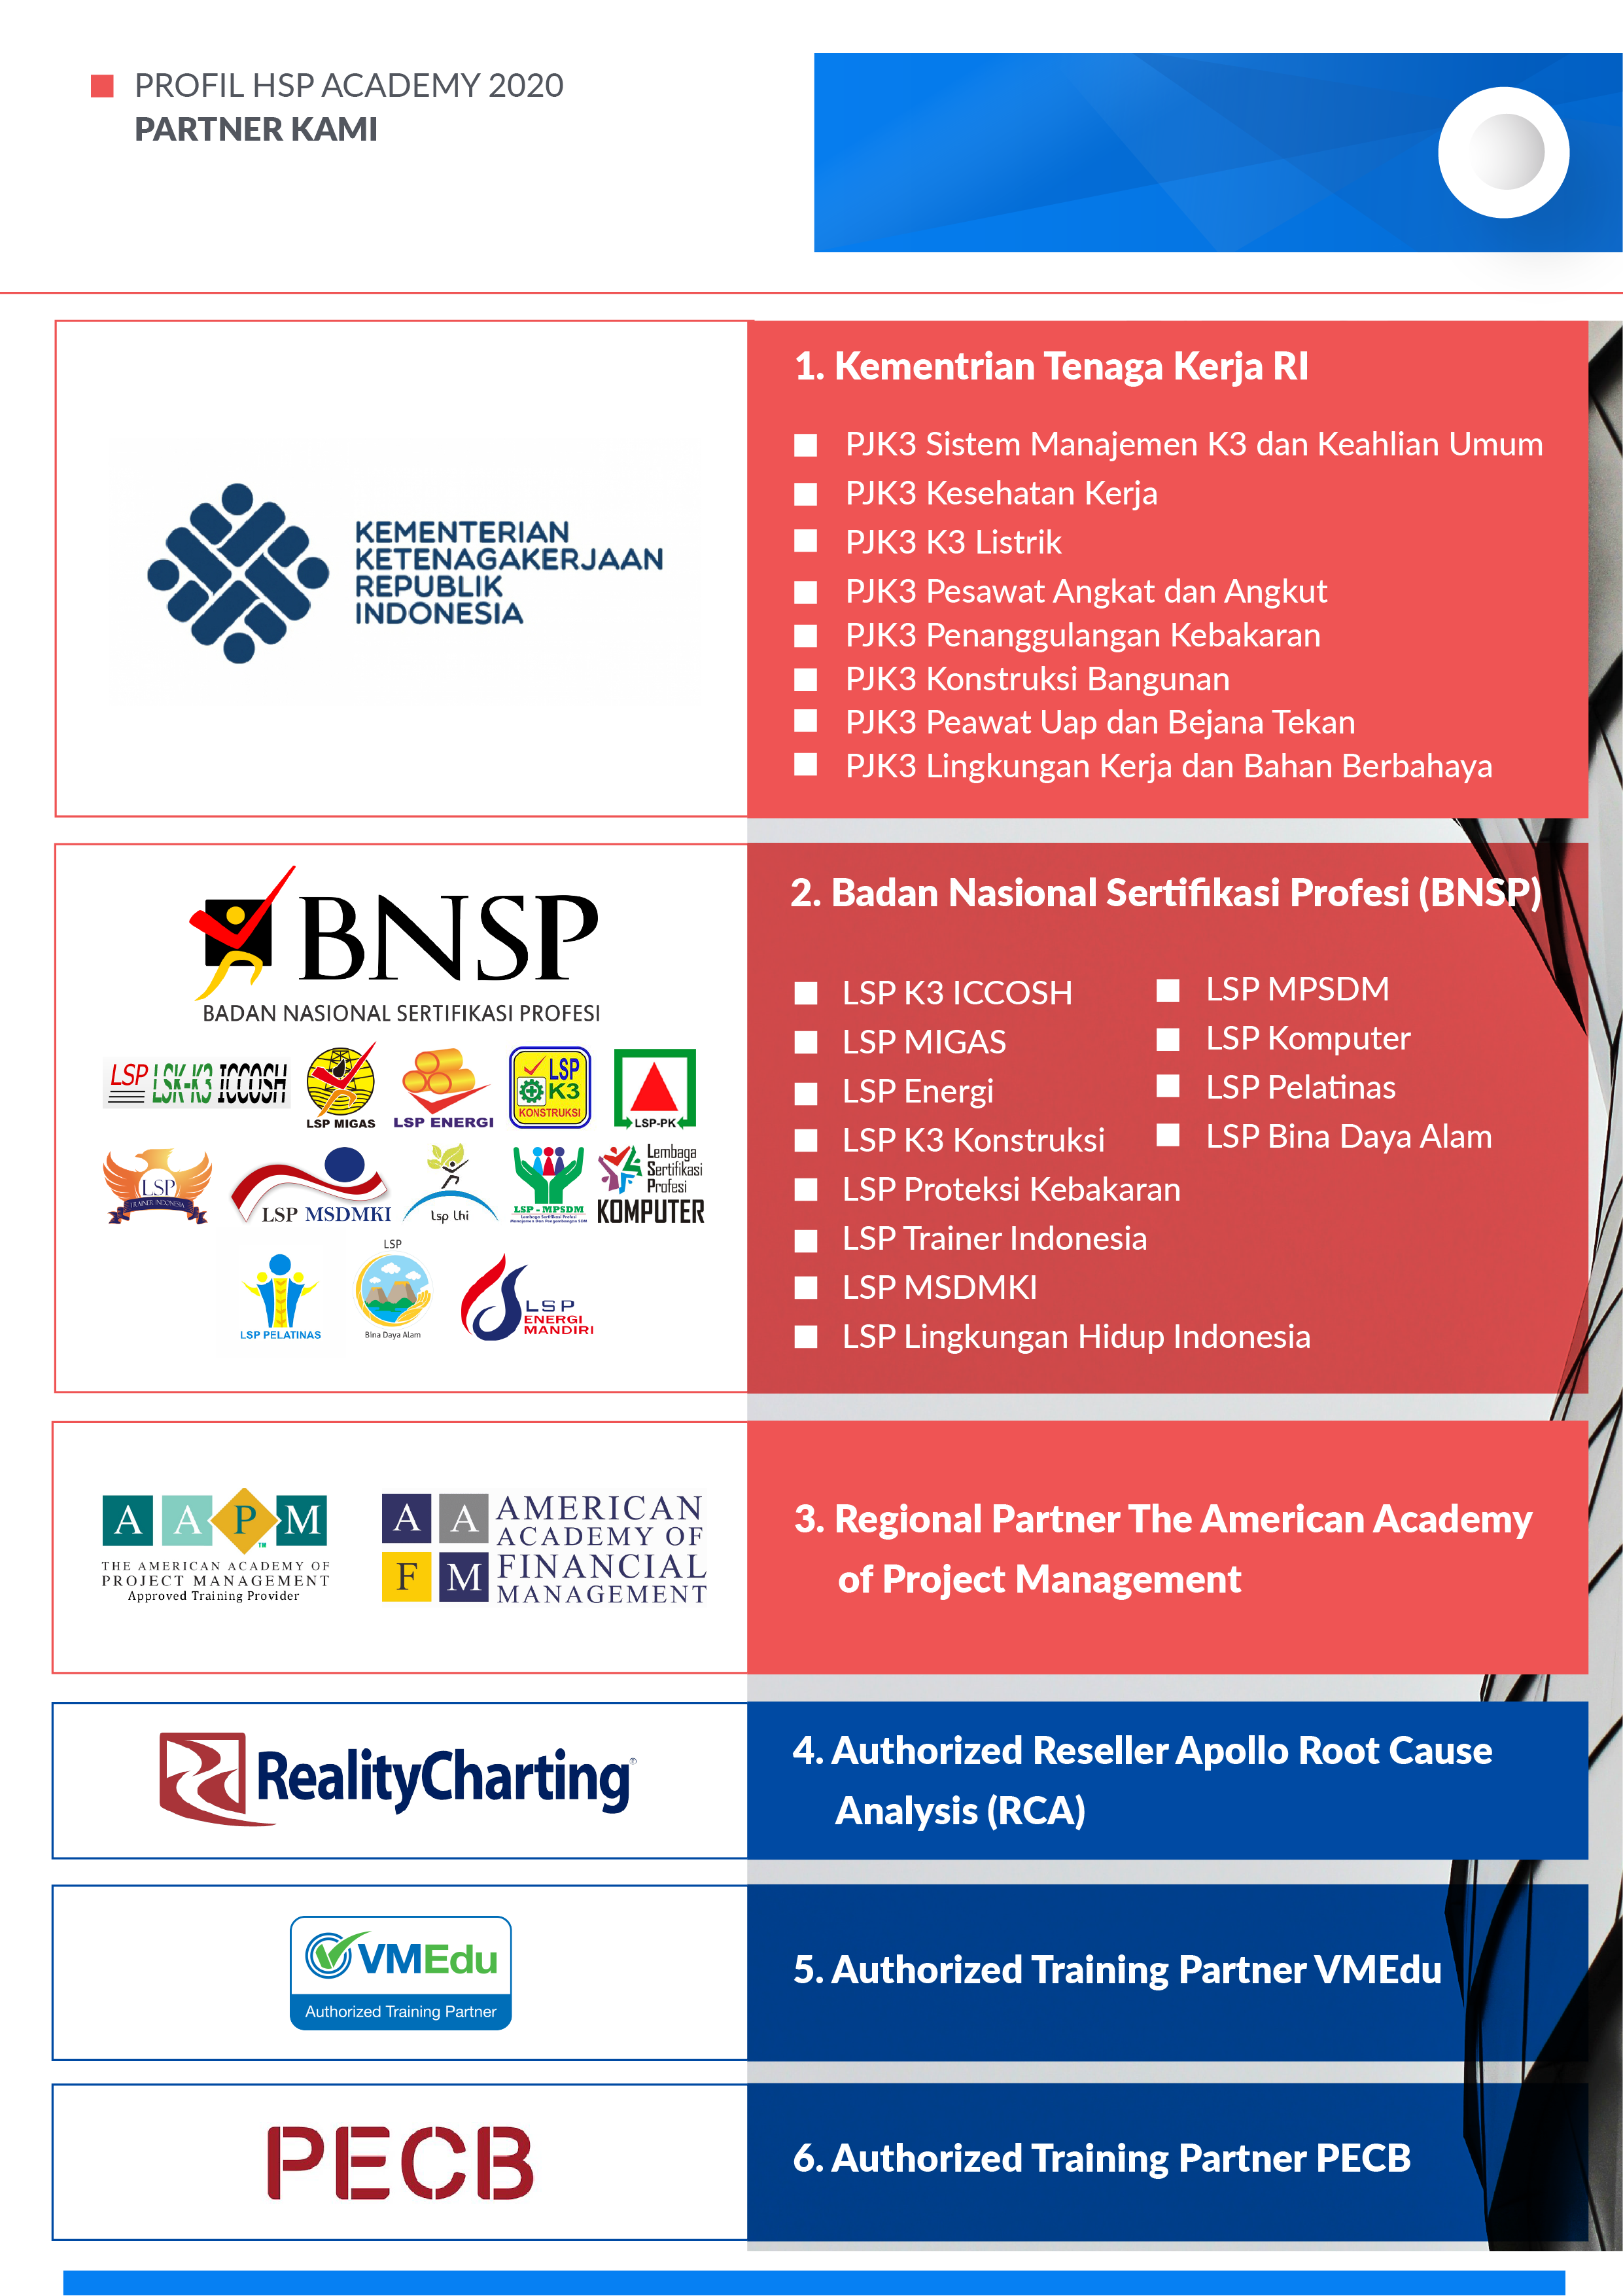 Profil Perusahaan HSP Academy 2020 - Bagian 1-12